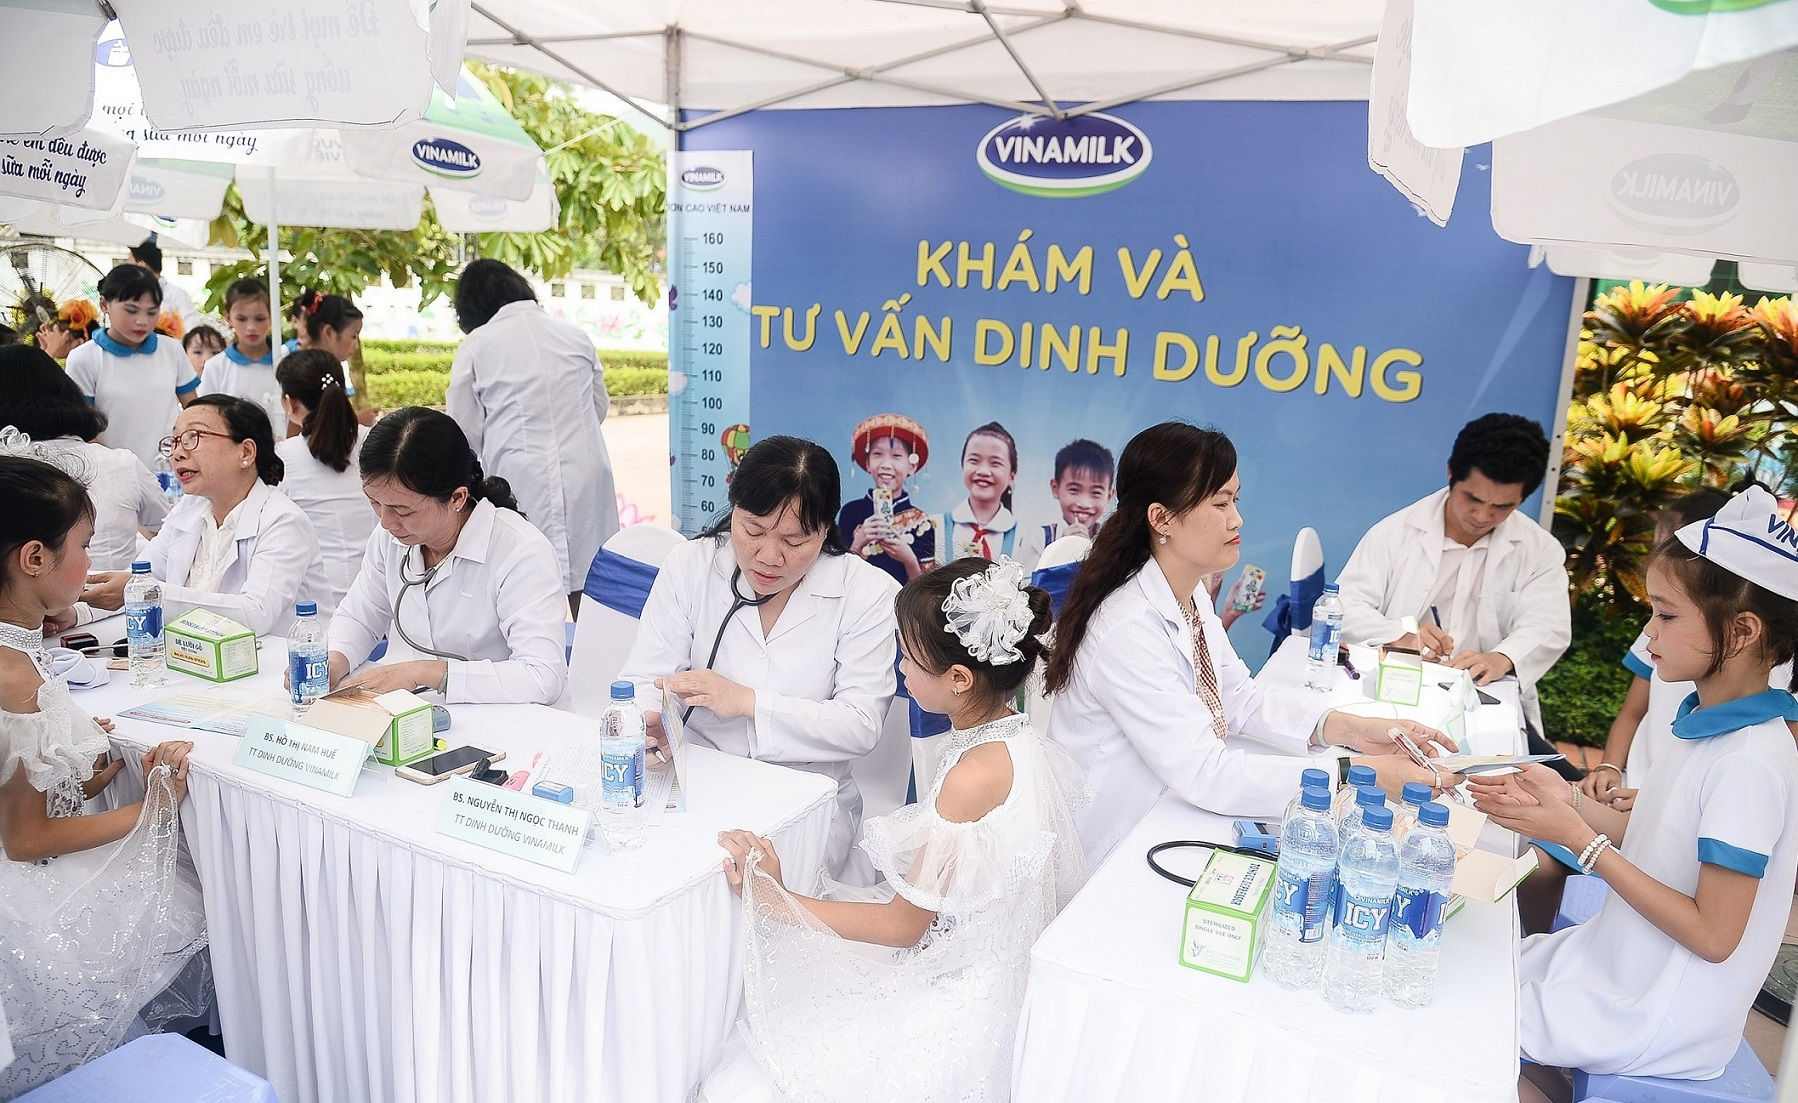 Quỹ sữa Vươn cao Việt Nam và Vinamilk chung tay vì trẻ em Thái Nguyên